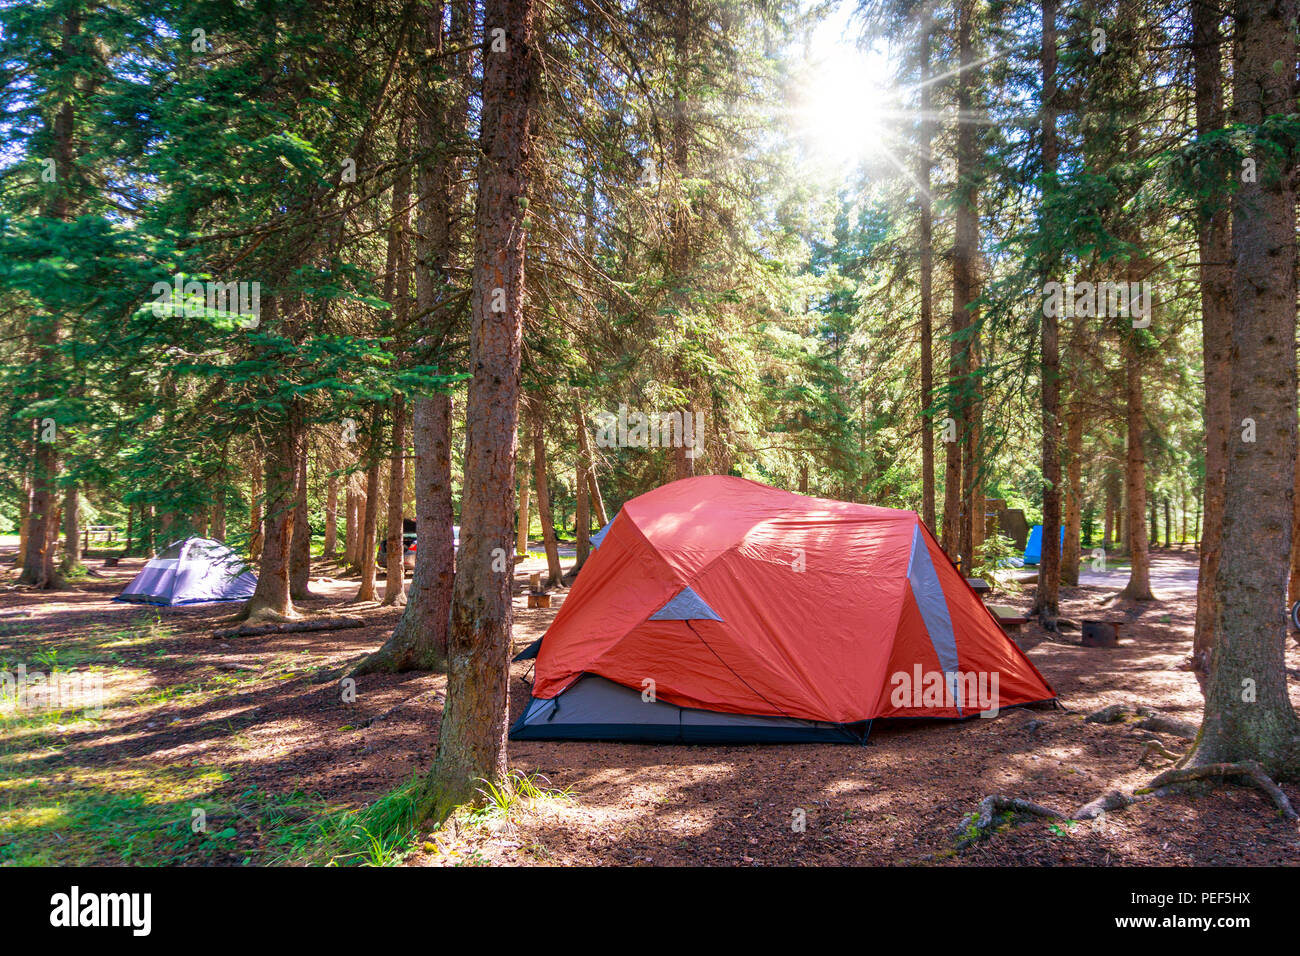 Morning Sunrise sur tente de camping dans le désert de l'été Parc national Banff au Canada avec pinède environnante. Banque D'Images